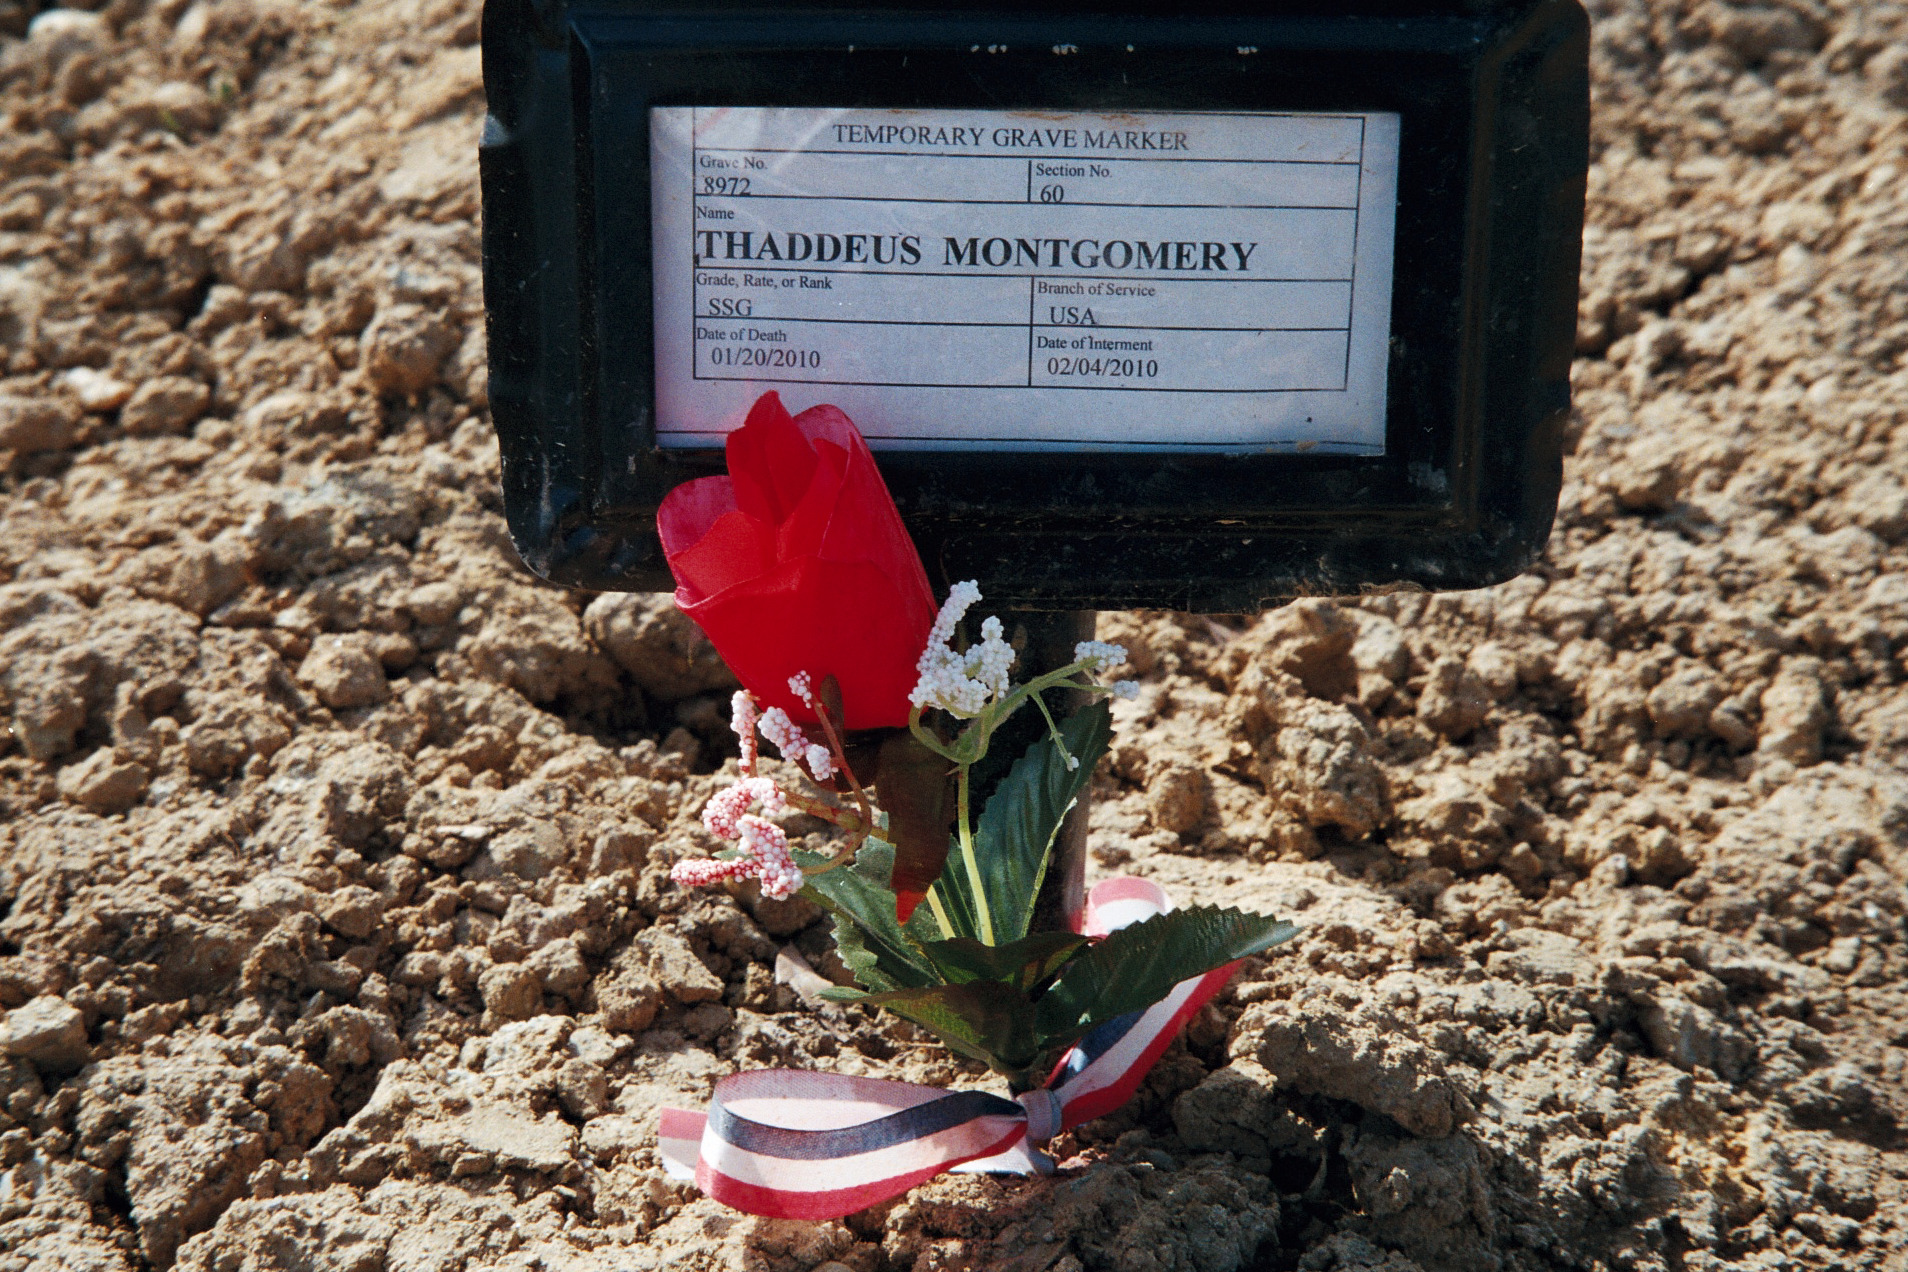 thaddeus-montgomery-gravesite-photo-by-eileen-horan-march-2010-001